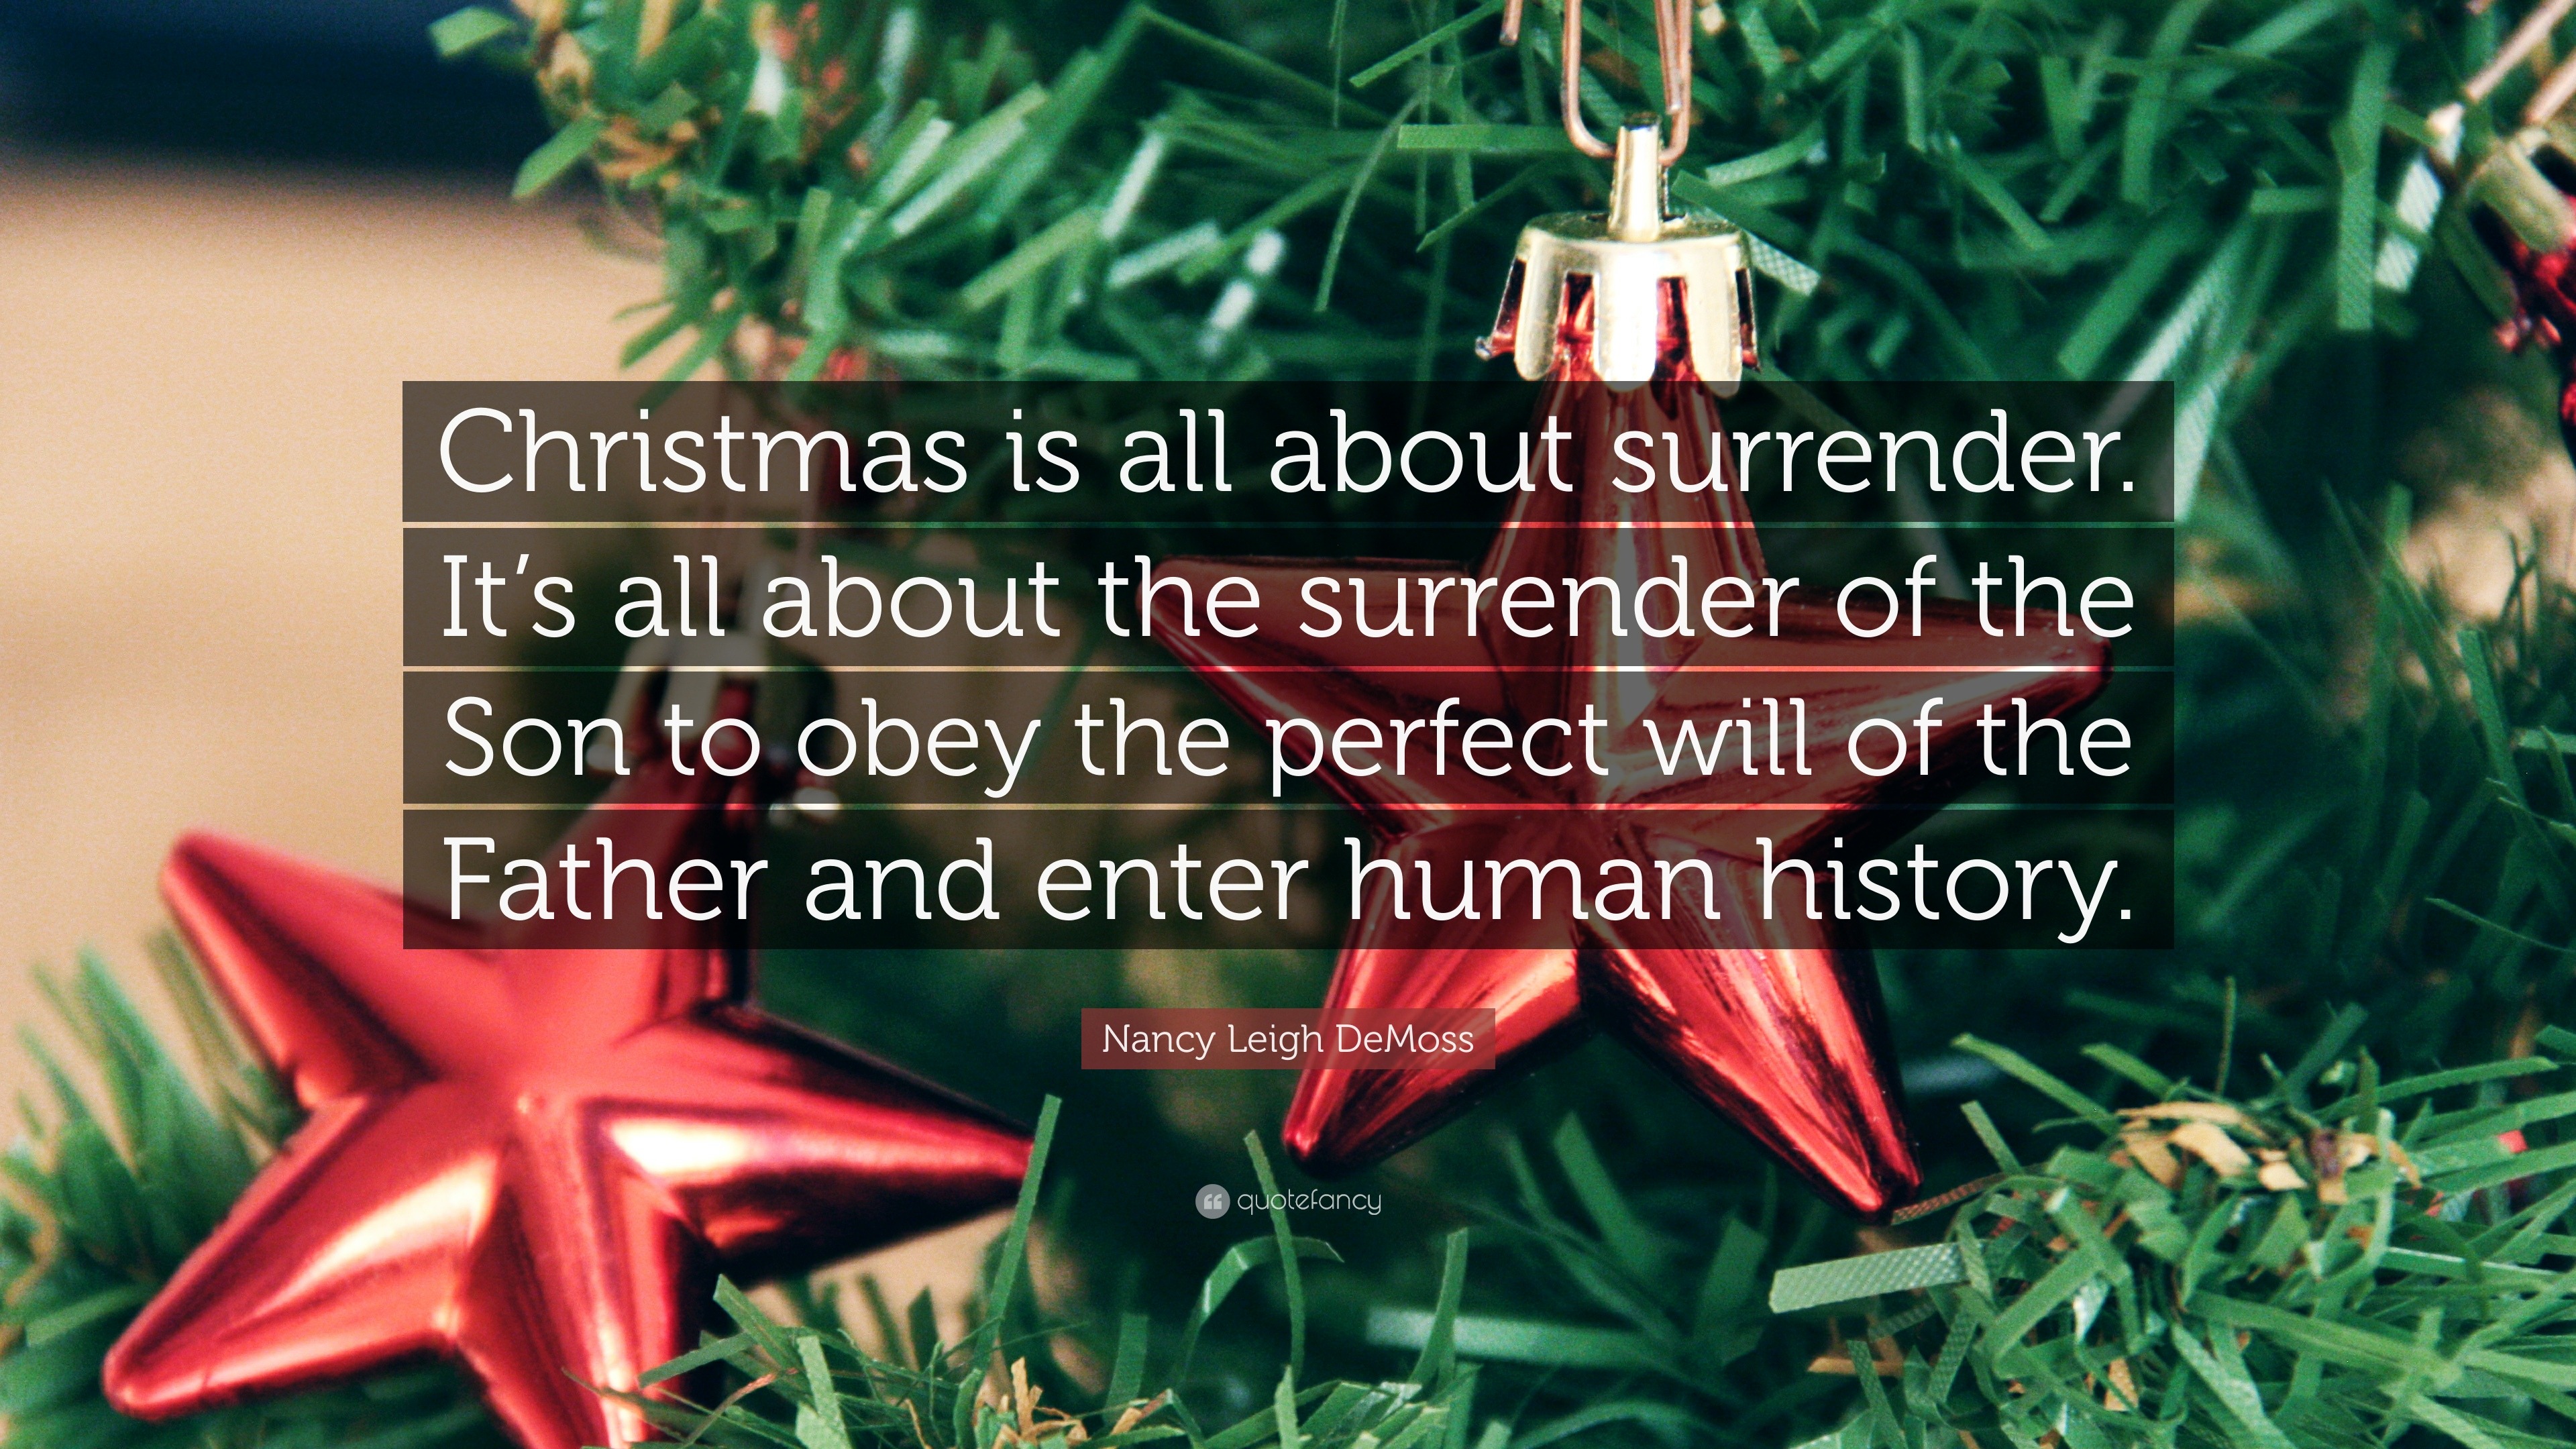 Mùa Giáng Sinh là thời điểm để chúng ta cảm nhận tình yêu và sự hi sinh của Chúa trong cuộc sống của mình. Hãy cùng khám phá trích dẫn của Nancy Leigh DeMoss về ý nghĩa cuộc sống và tình yêu của Chúa với chúng ta trong mùa lễ hội năm nay.